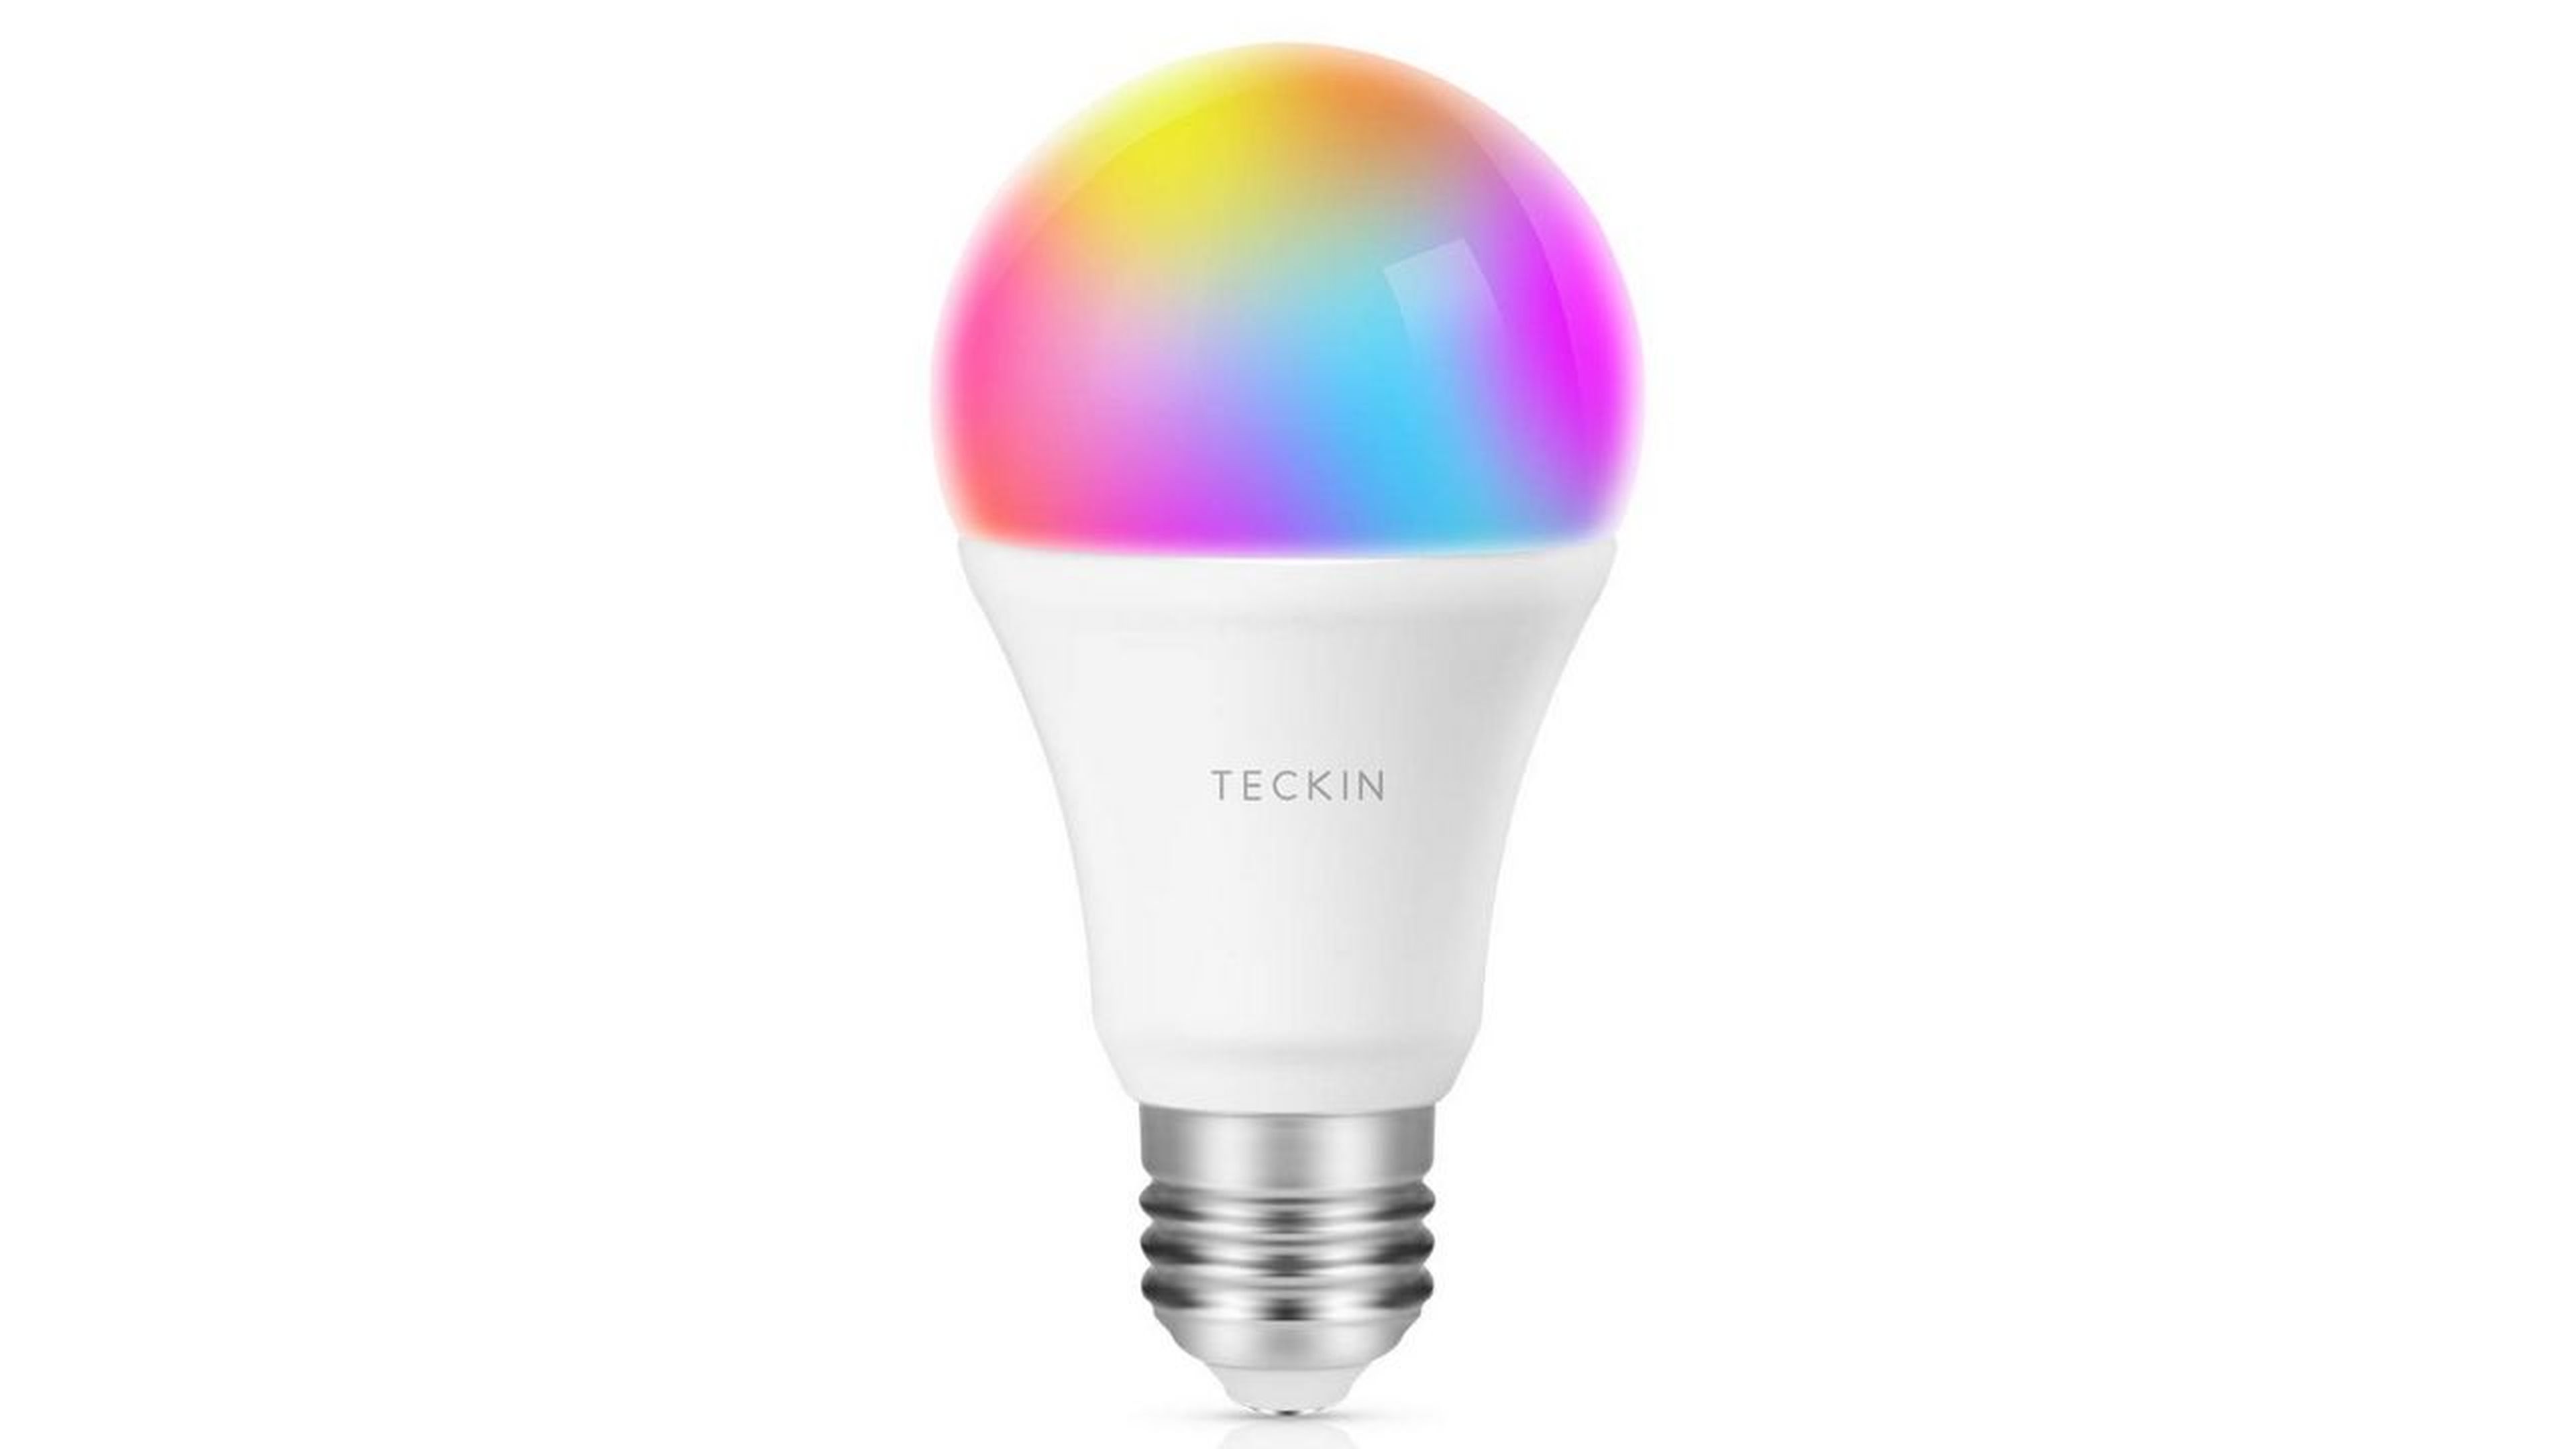 Amazon destaca entre sus ofertas del día esta bombilla LED Teckin